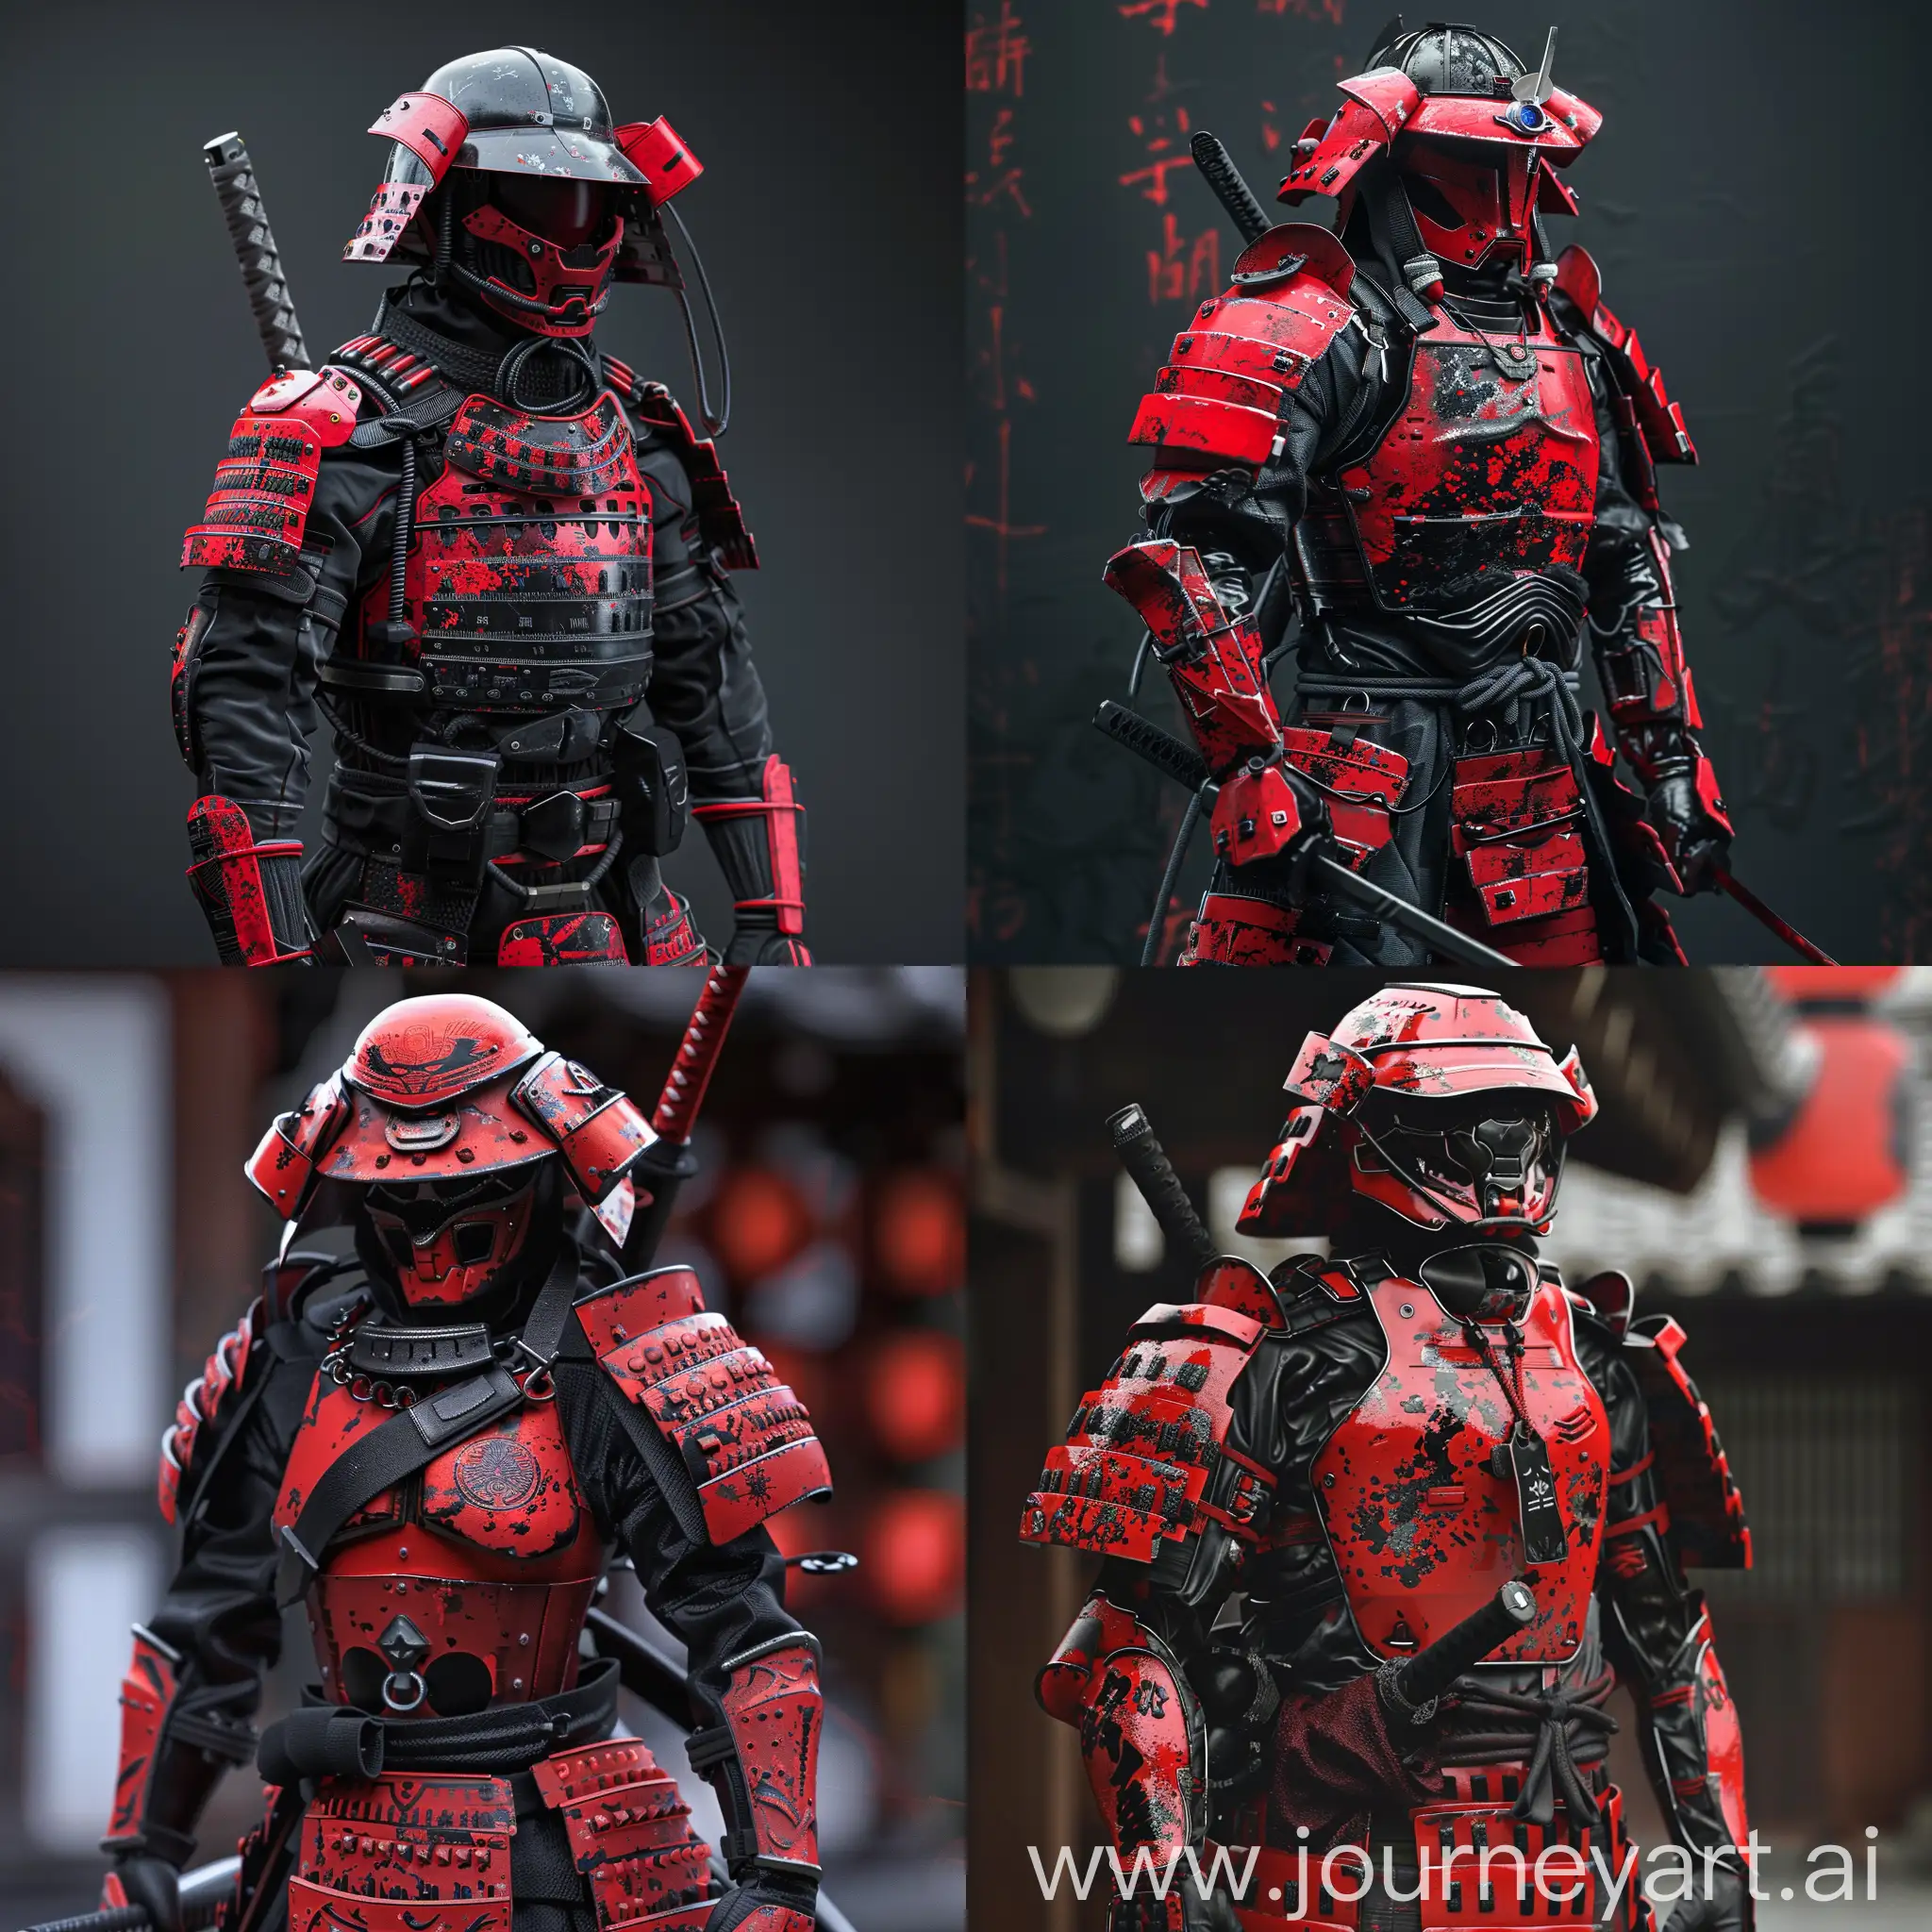 Cyberpunk Samurai storm trooper, red and black